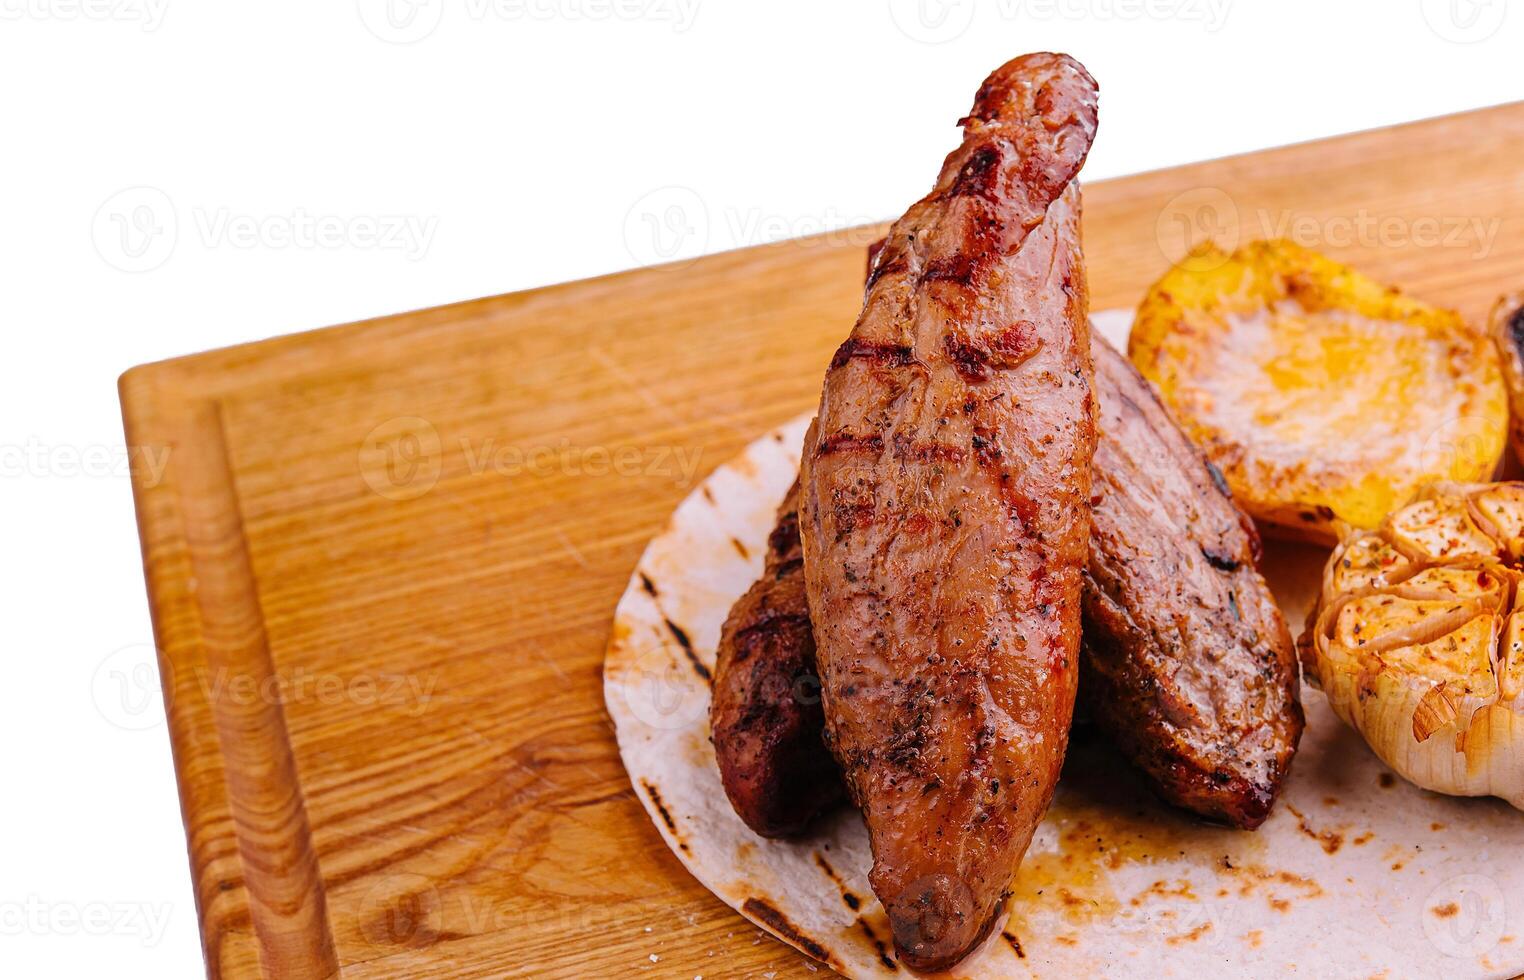 gegrillt Filet Steak mit Gemüse auf Holz foto